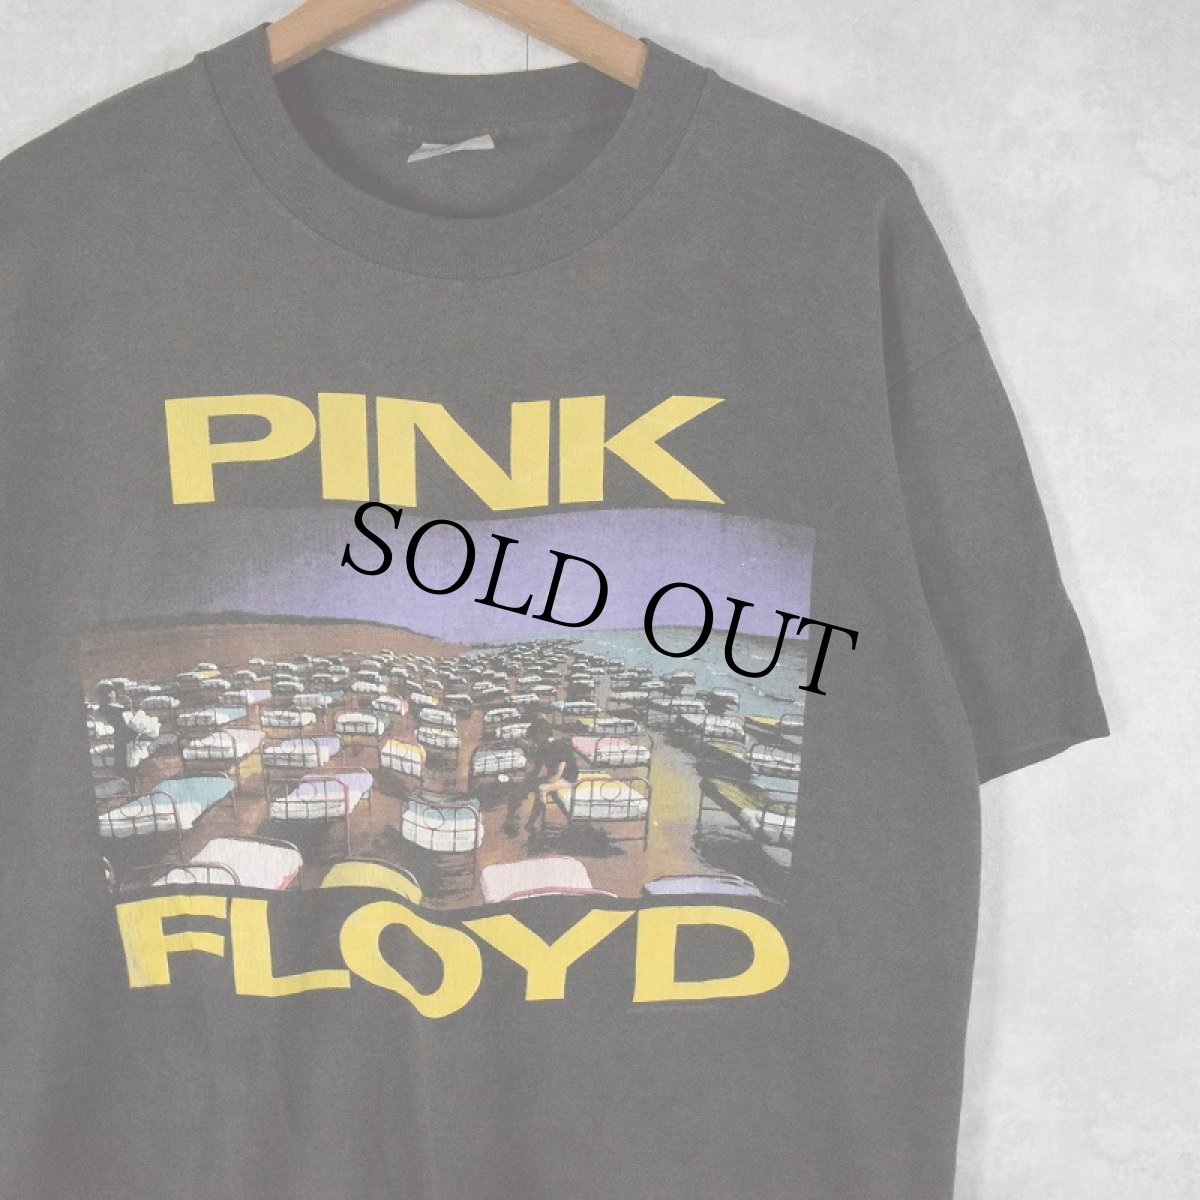 画像1: 80's PINK FLOYD UA製 ロックバンドツアーTシャツ XL (1)